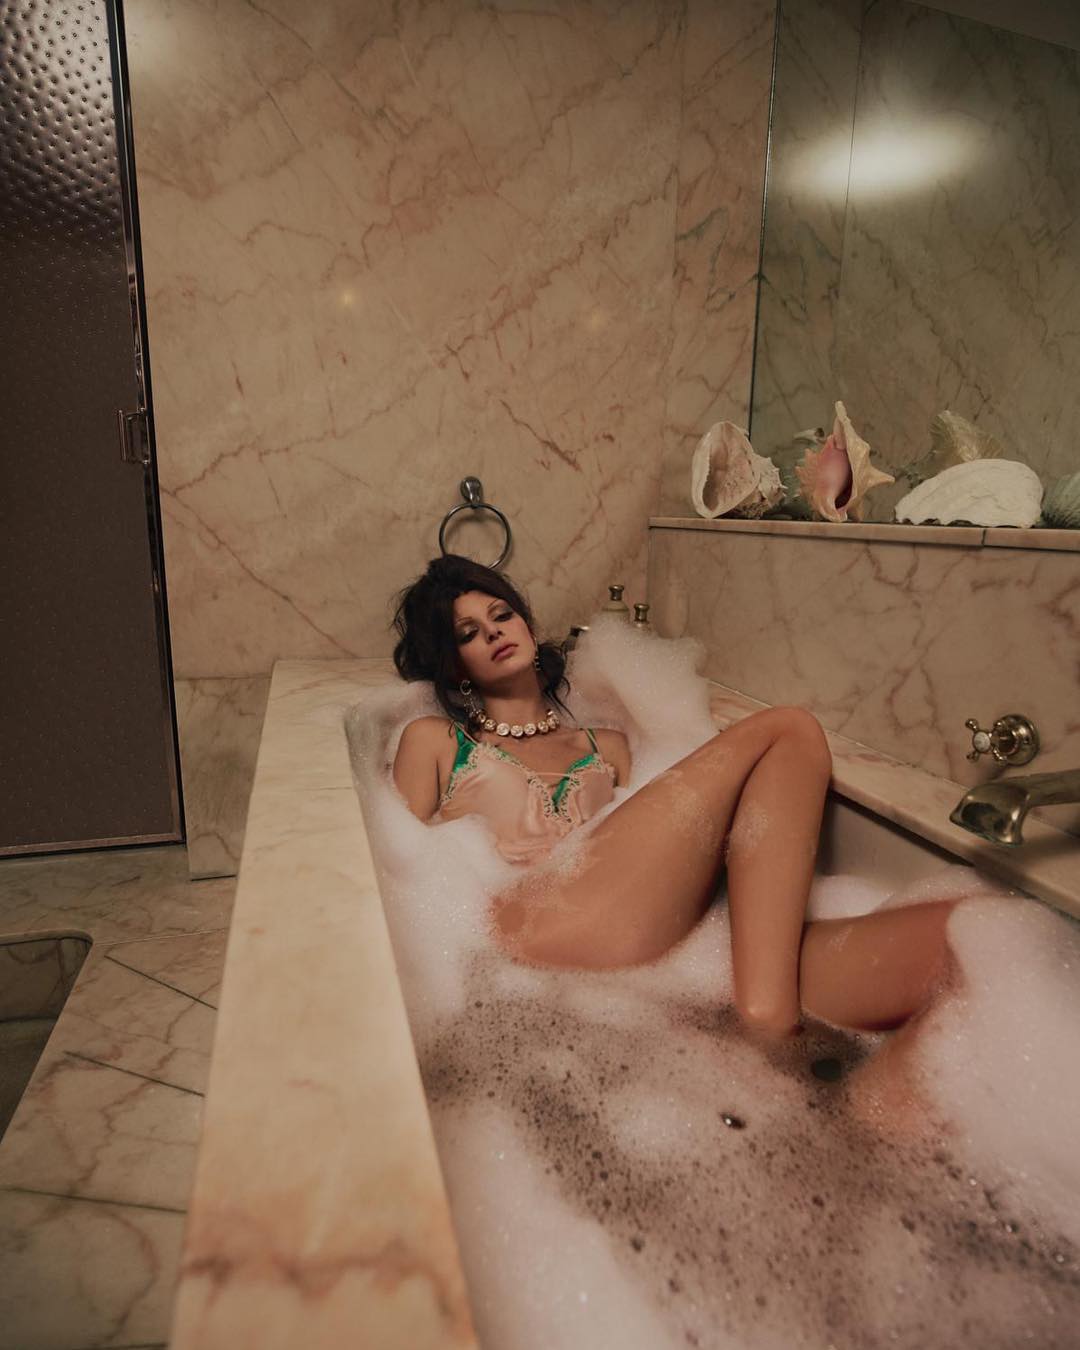 Kendall Jenner posa nua e eleva a sensualidade do clã Kardashian a um patamar nunca antes visto